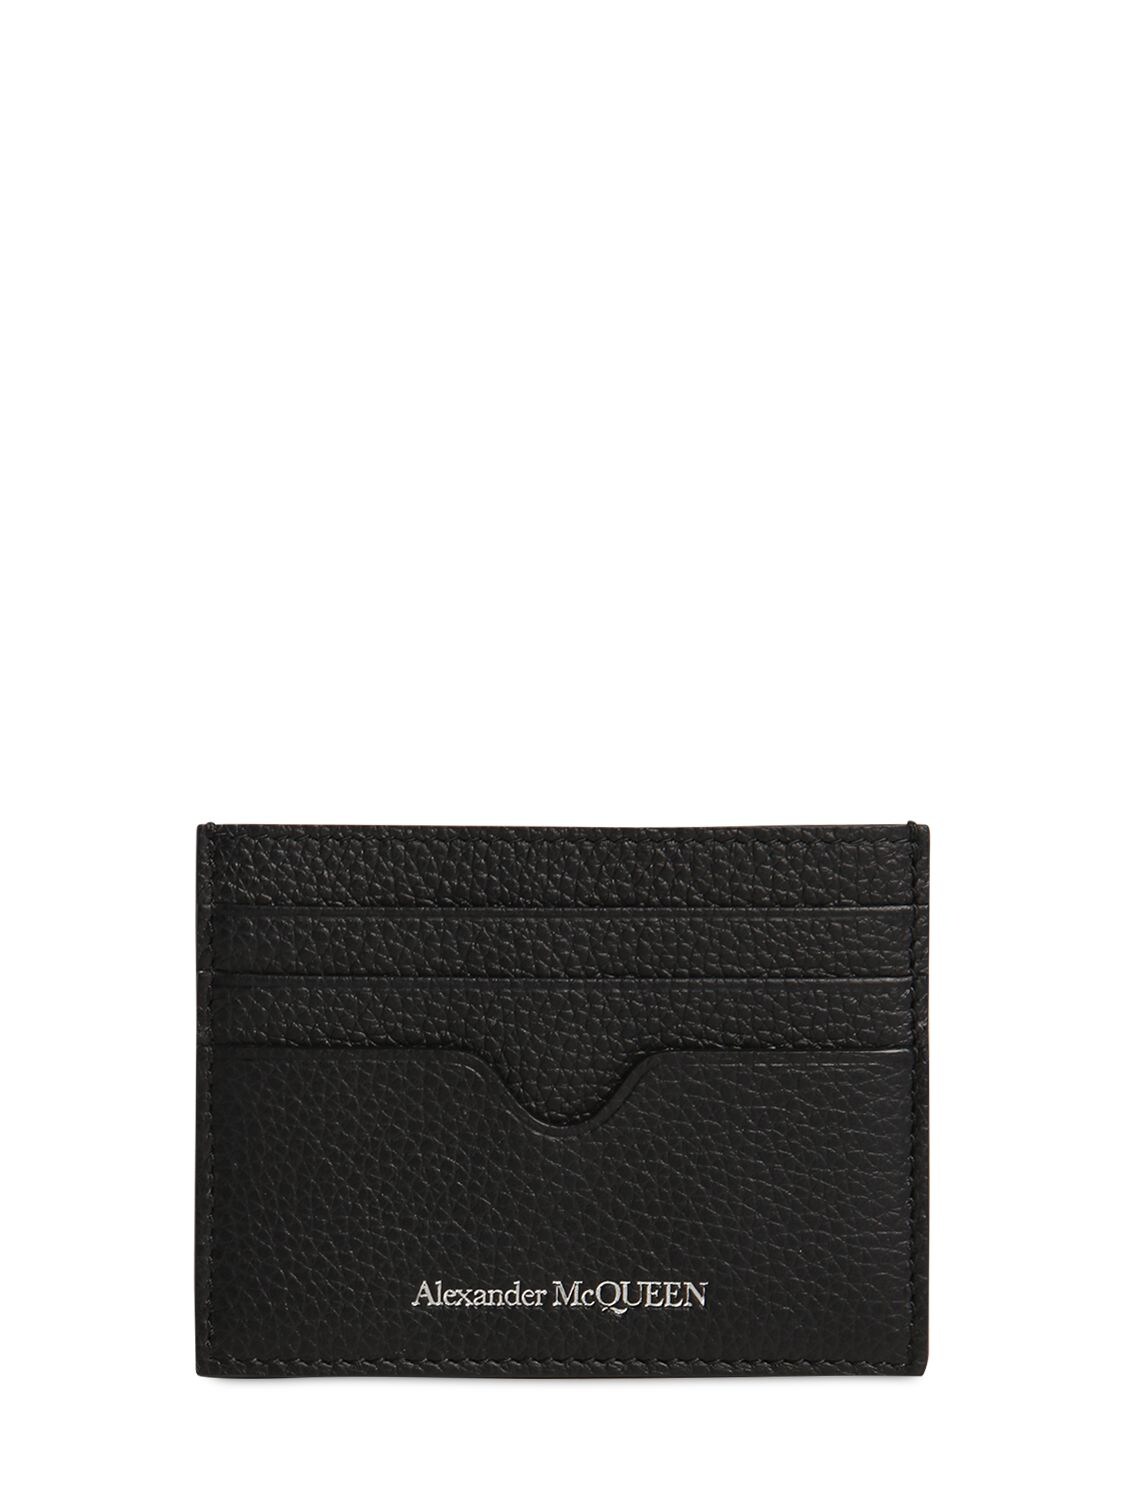 ALEXANDER MCQUEEN LOGO皮革卡包,70IA9V005-MTAWMA2